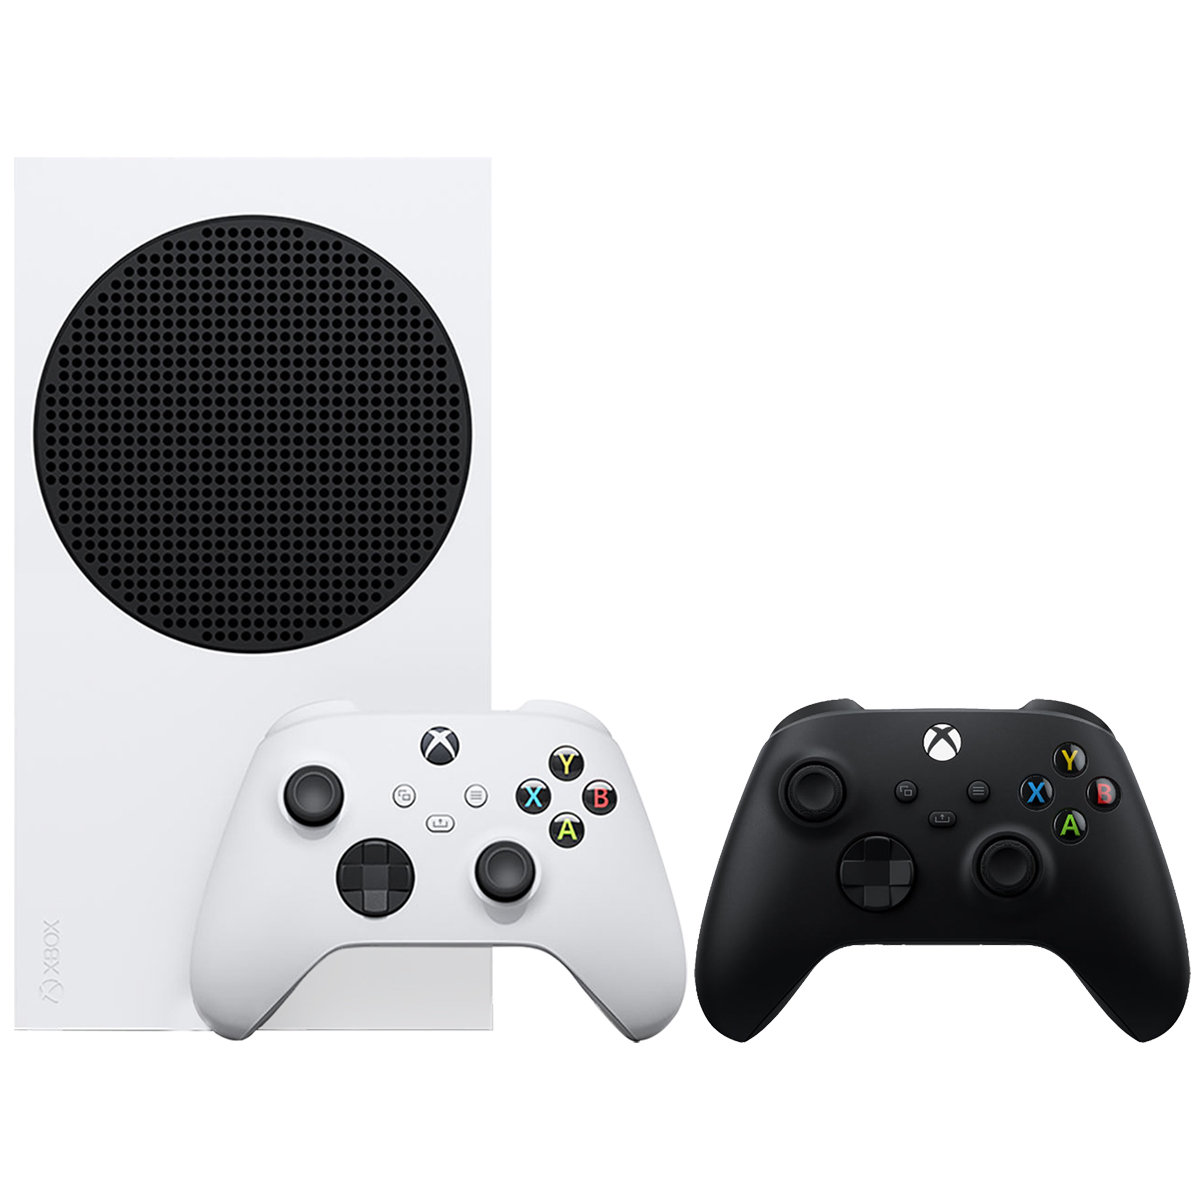 نکته خرید - قیمت روز مجموعه کنسول بازی مایکروسافت مدل Xbox Series S ظرفیت 500 گیگابایت به همراه دسته اضافی خرید